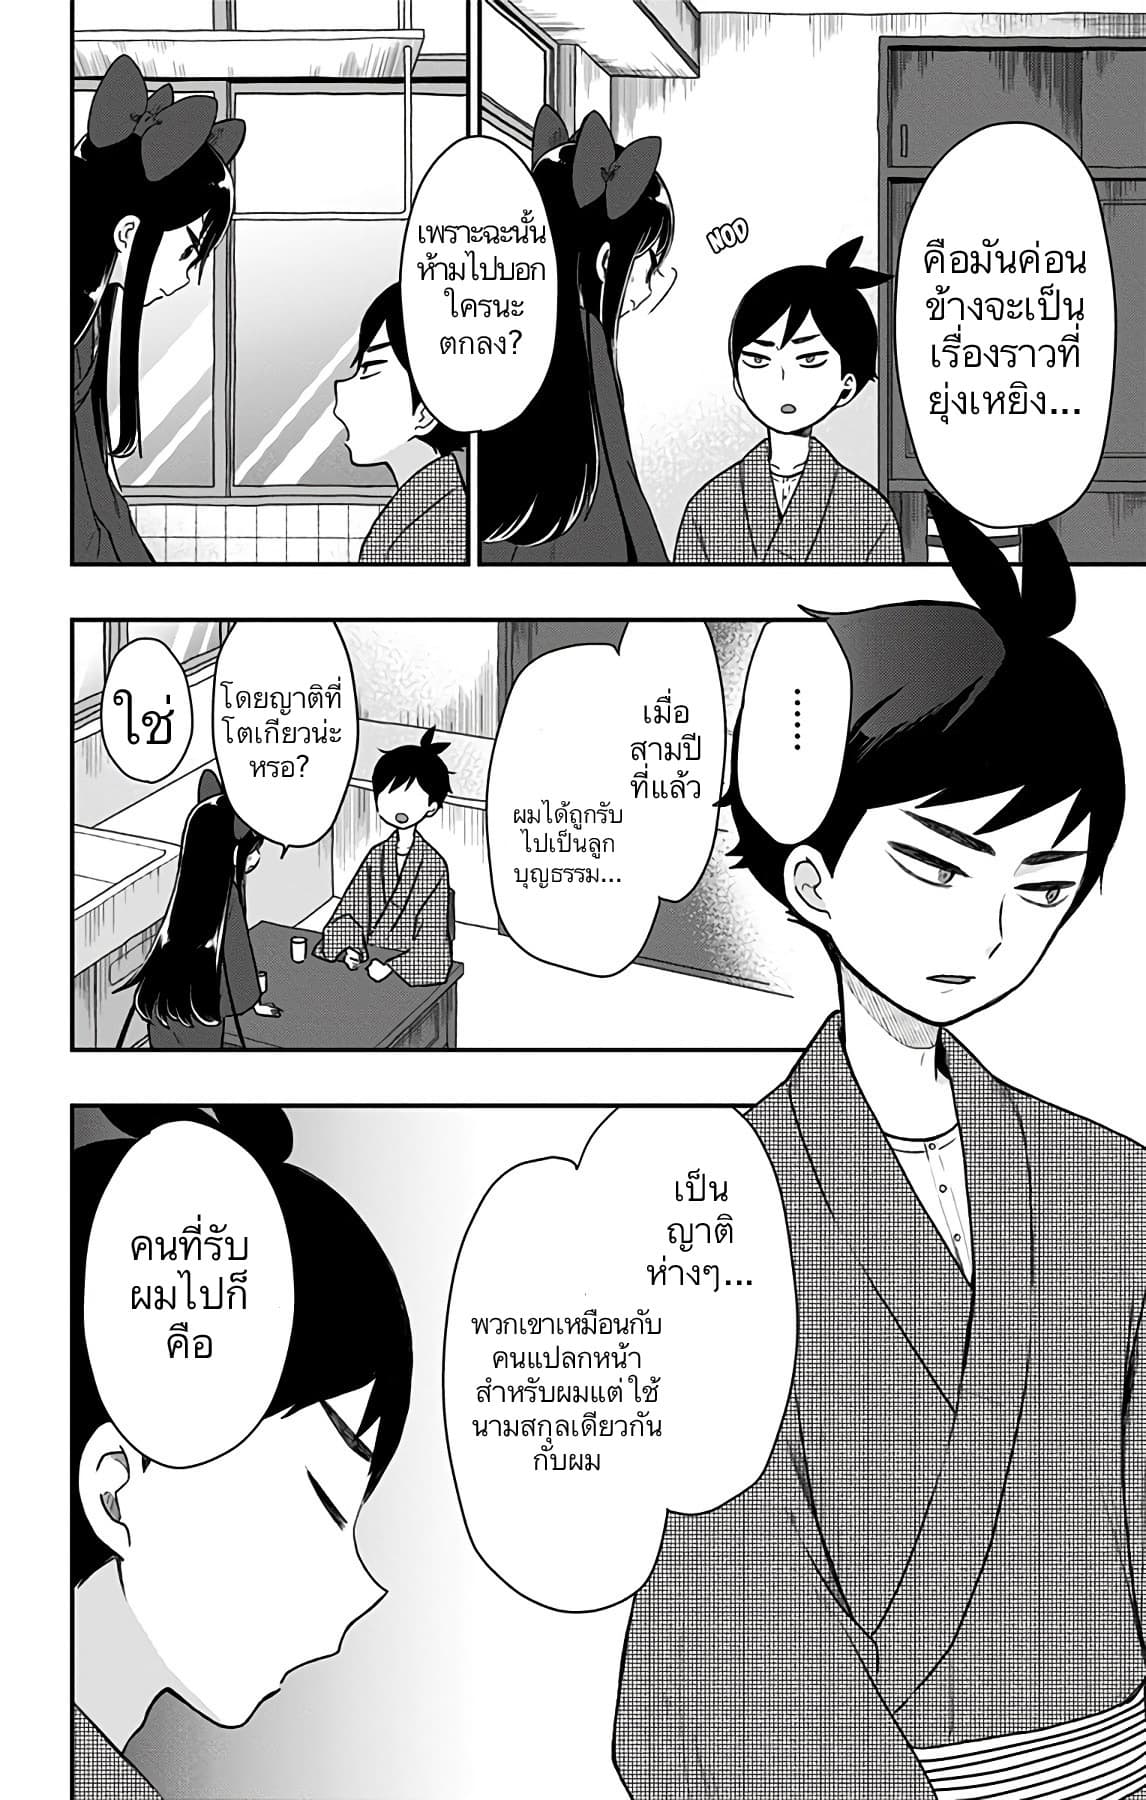 Shouwa Otome Otogibanashi เรื่องเล่าของสาวน้อย ยุคโชวะ ตอนที่ 12 (2)